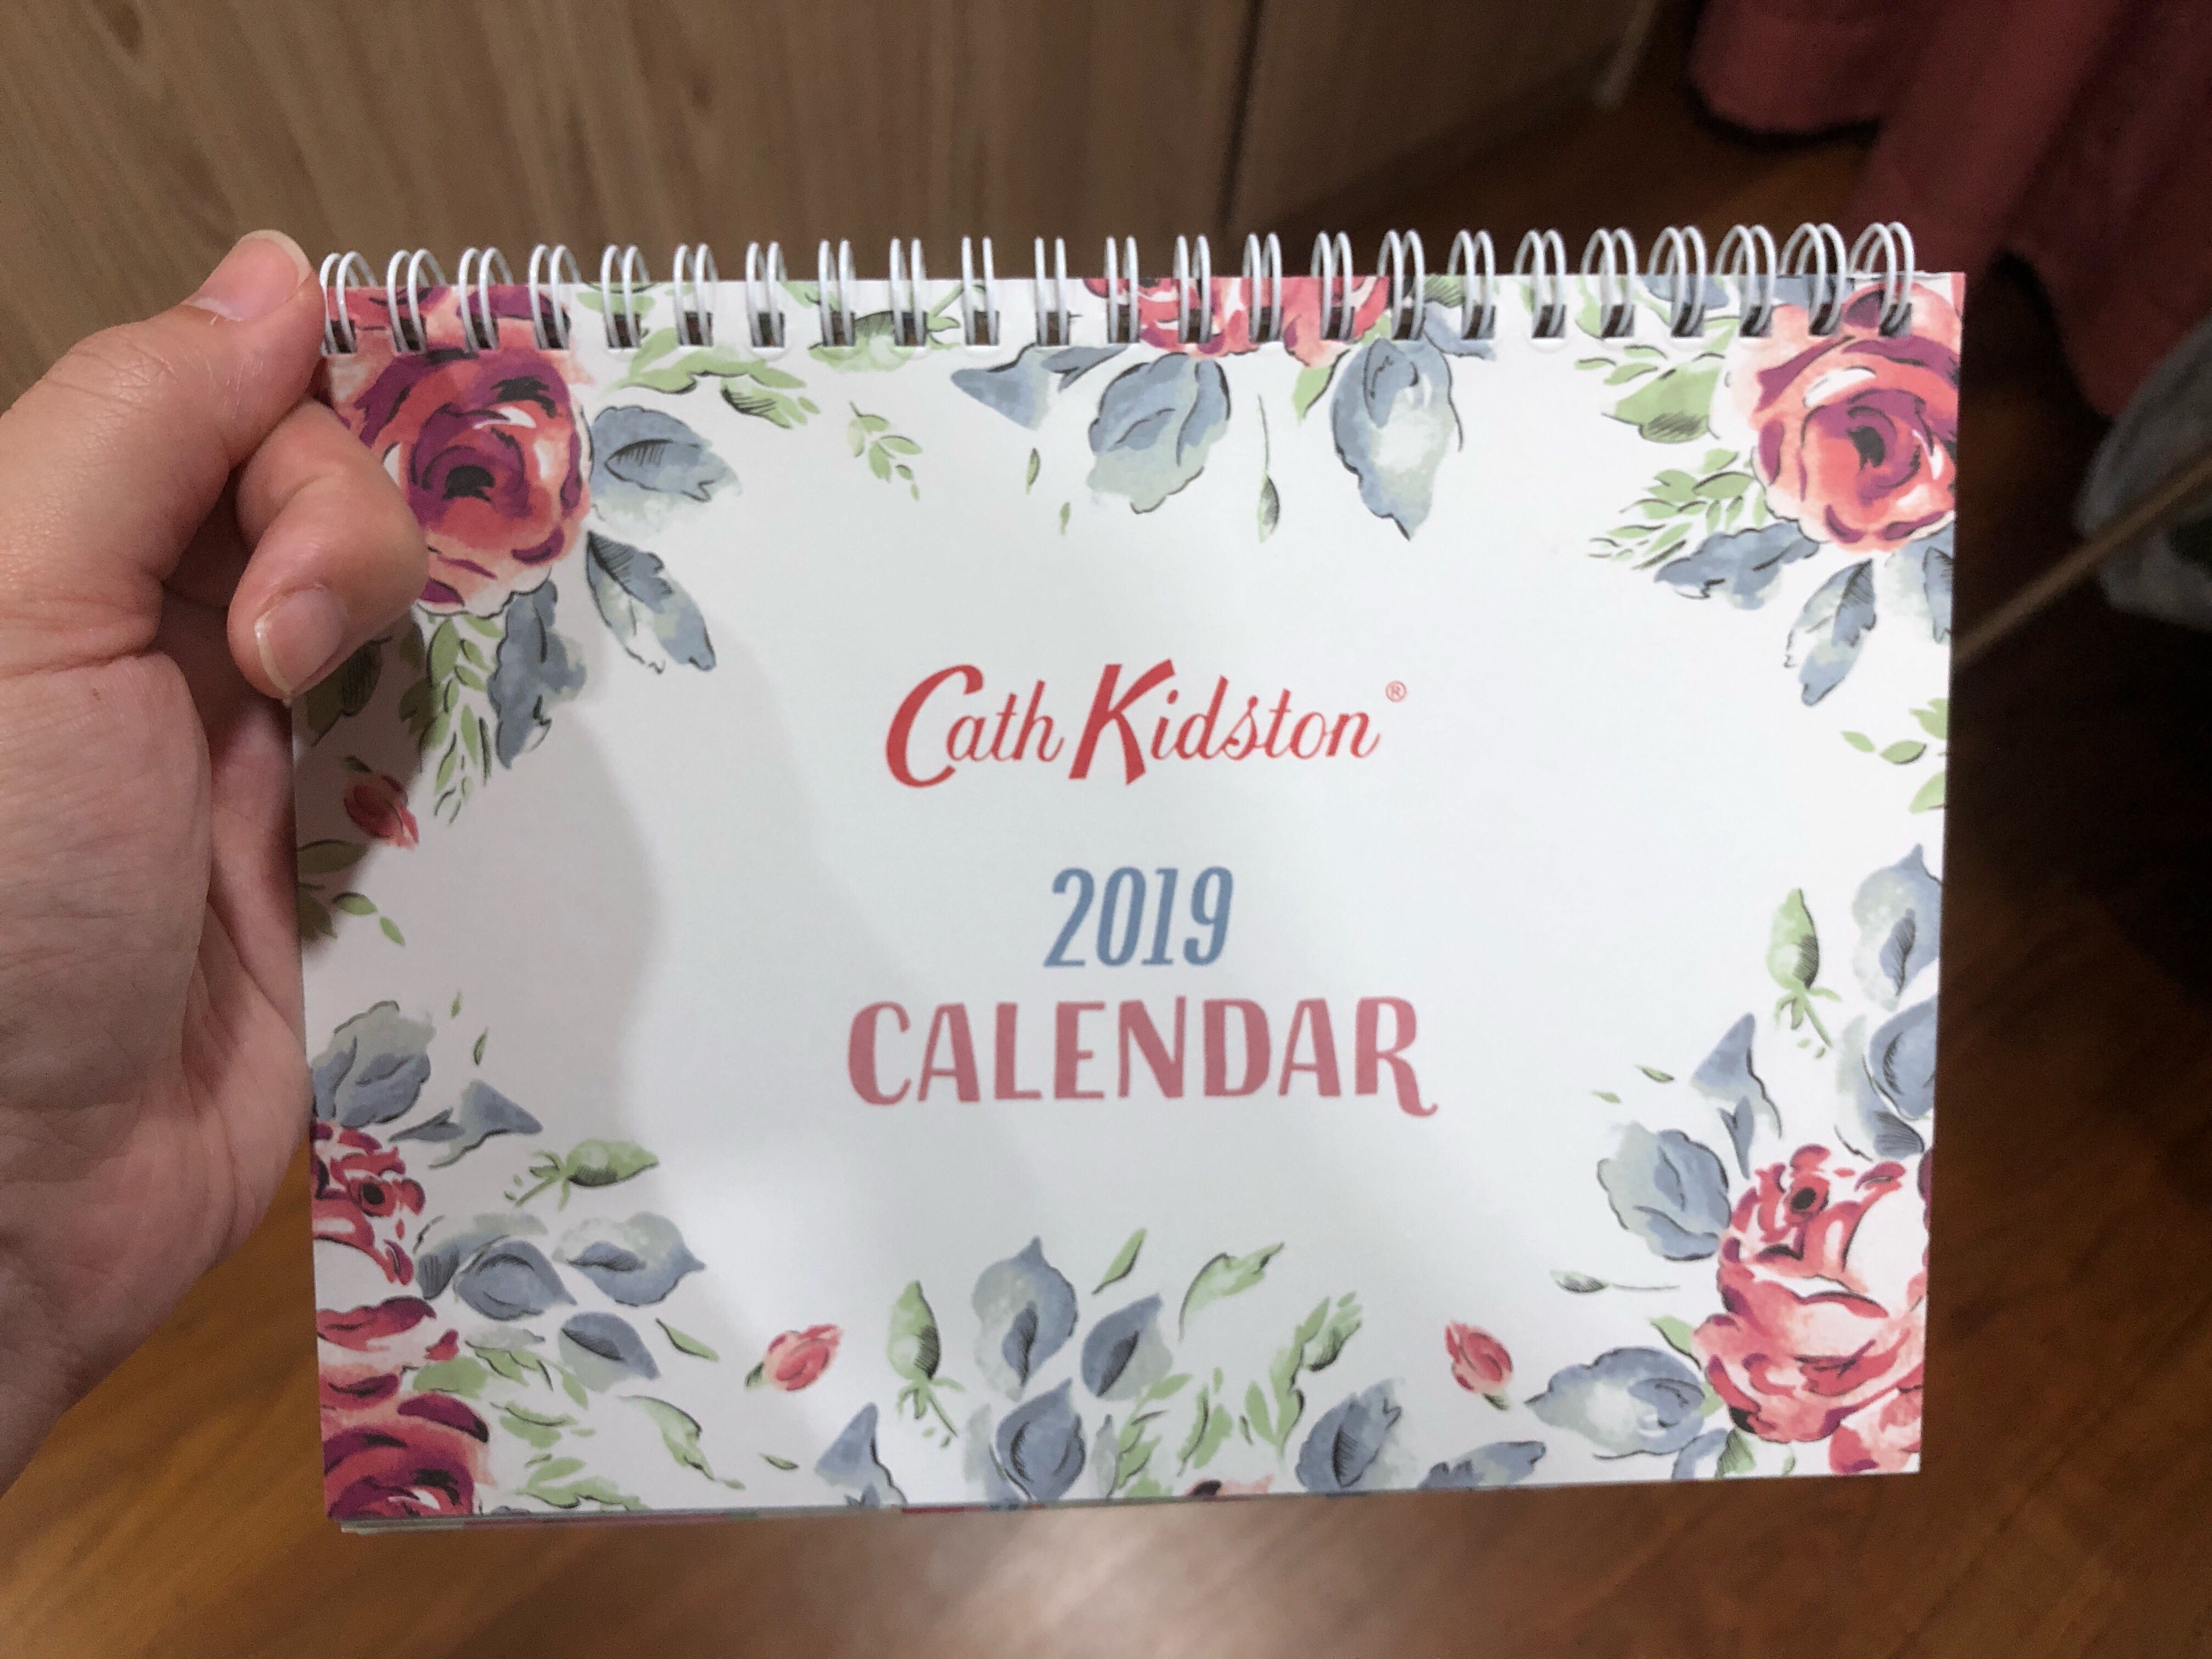 cath kidston voucher code 2019